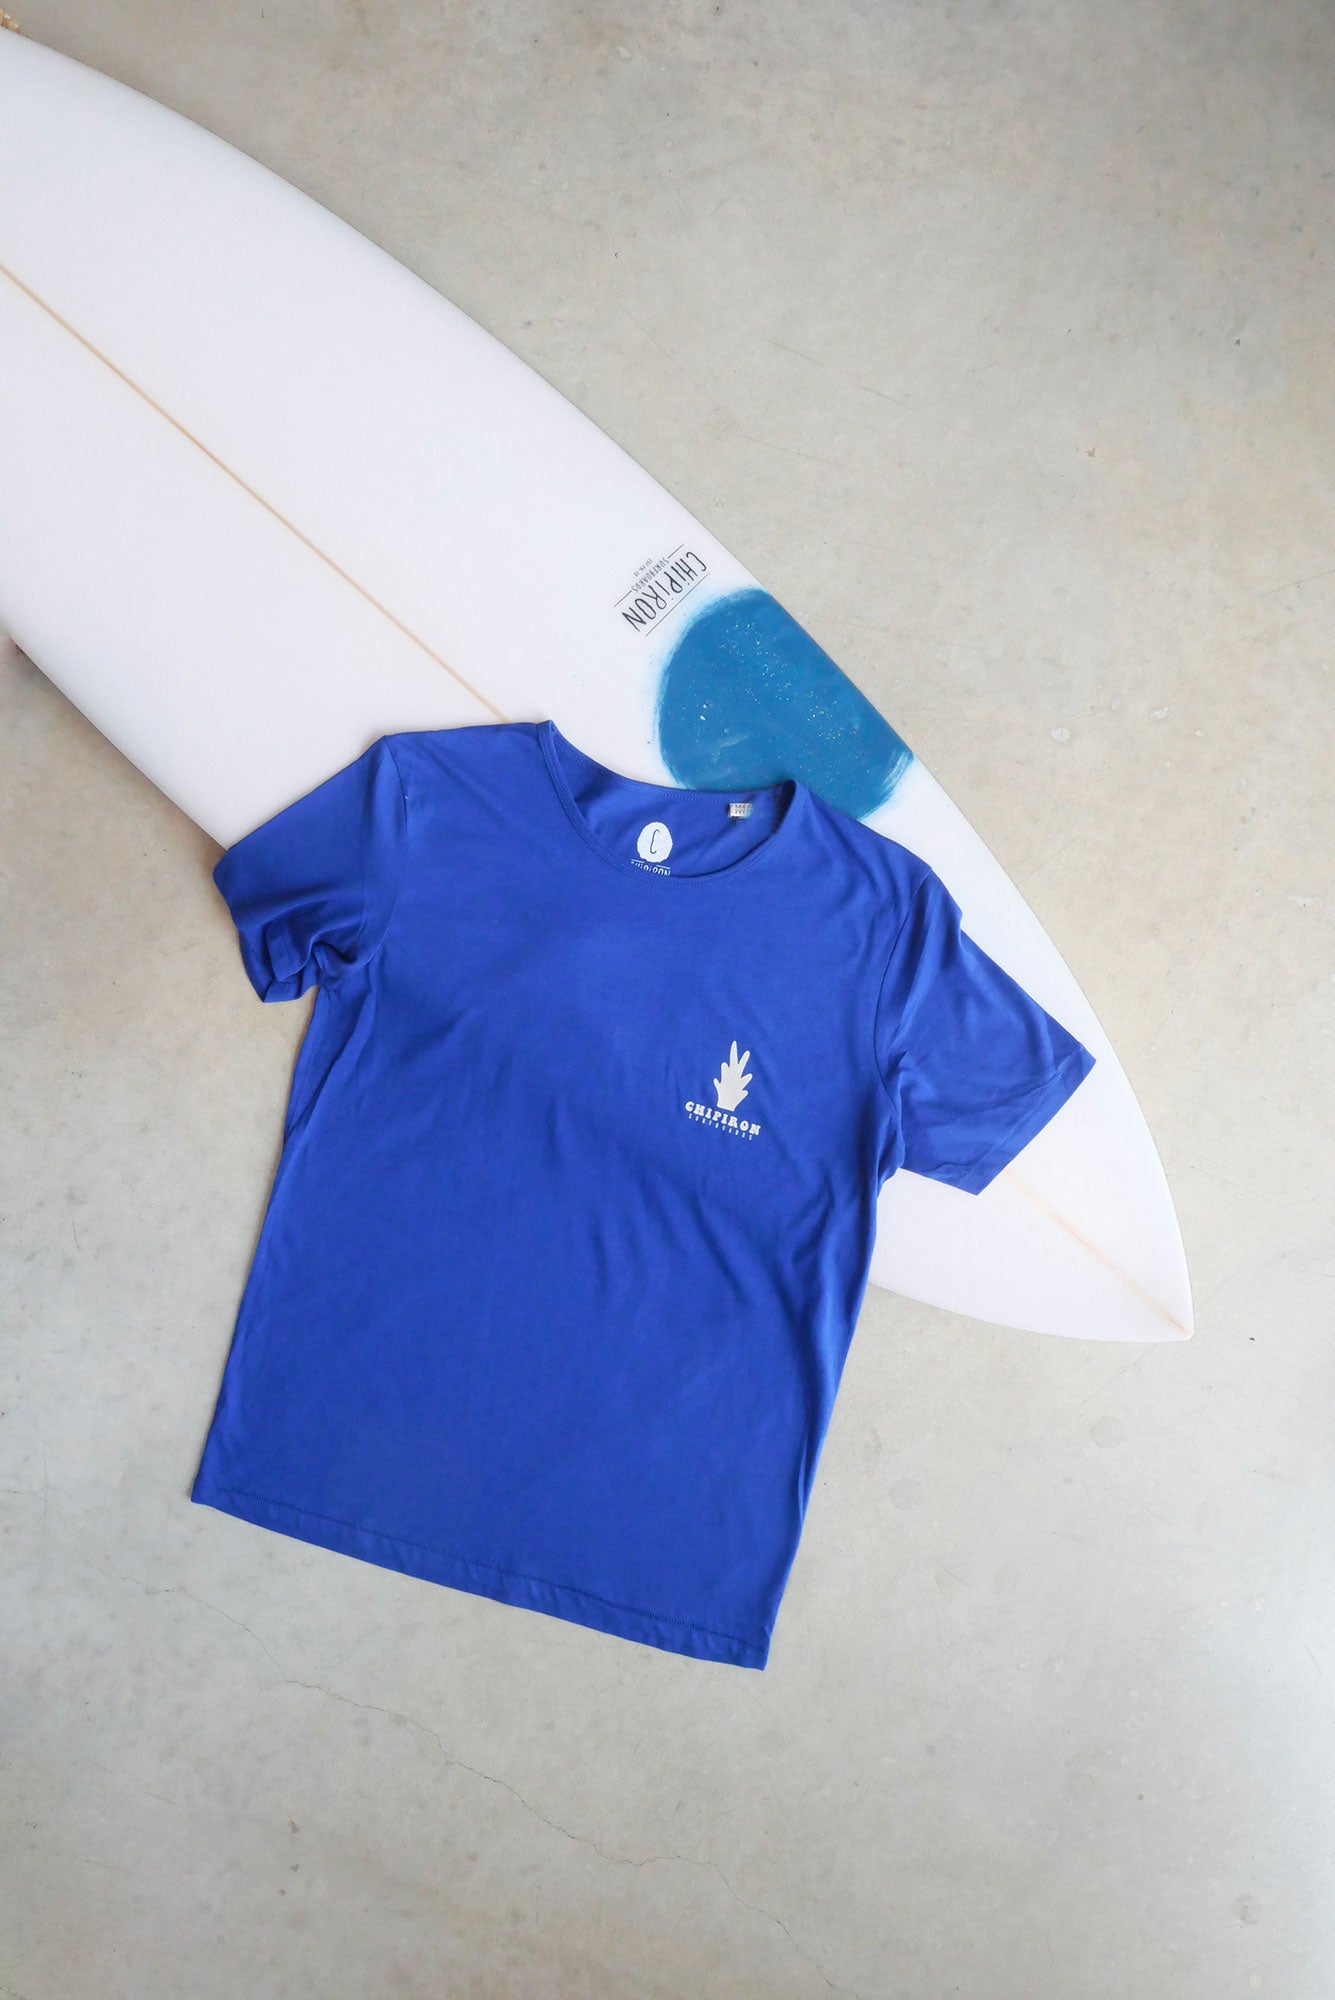 melted-bleu-t-shirt-chipiron-surfboards-hossegor